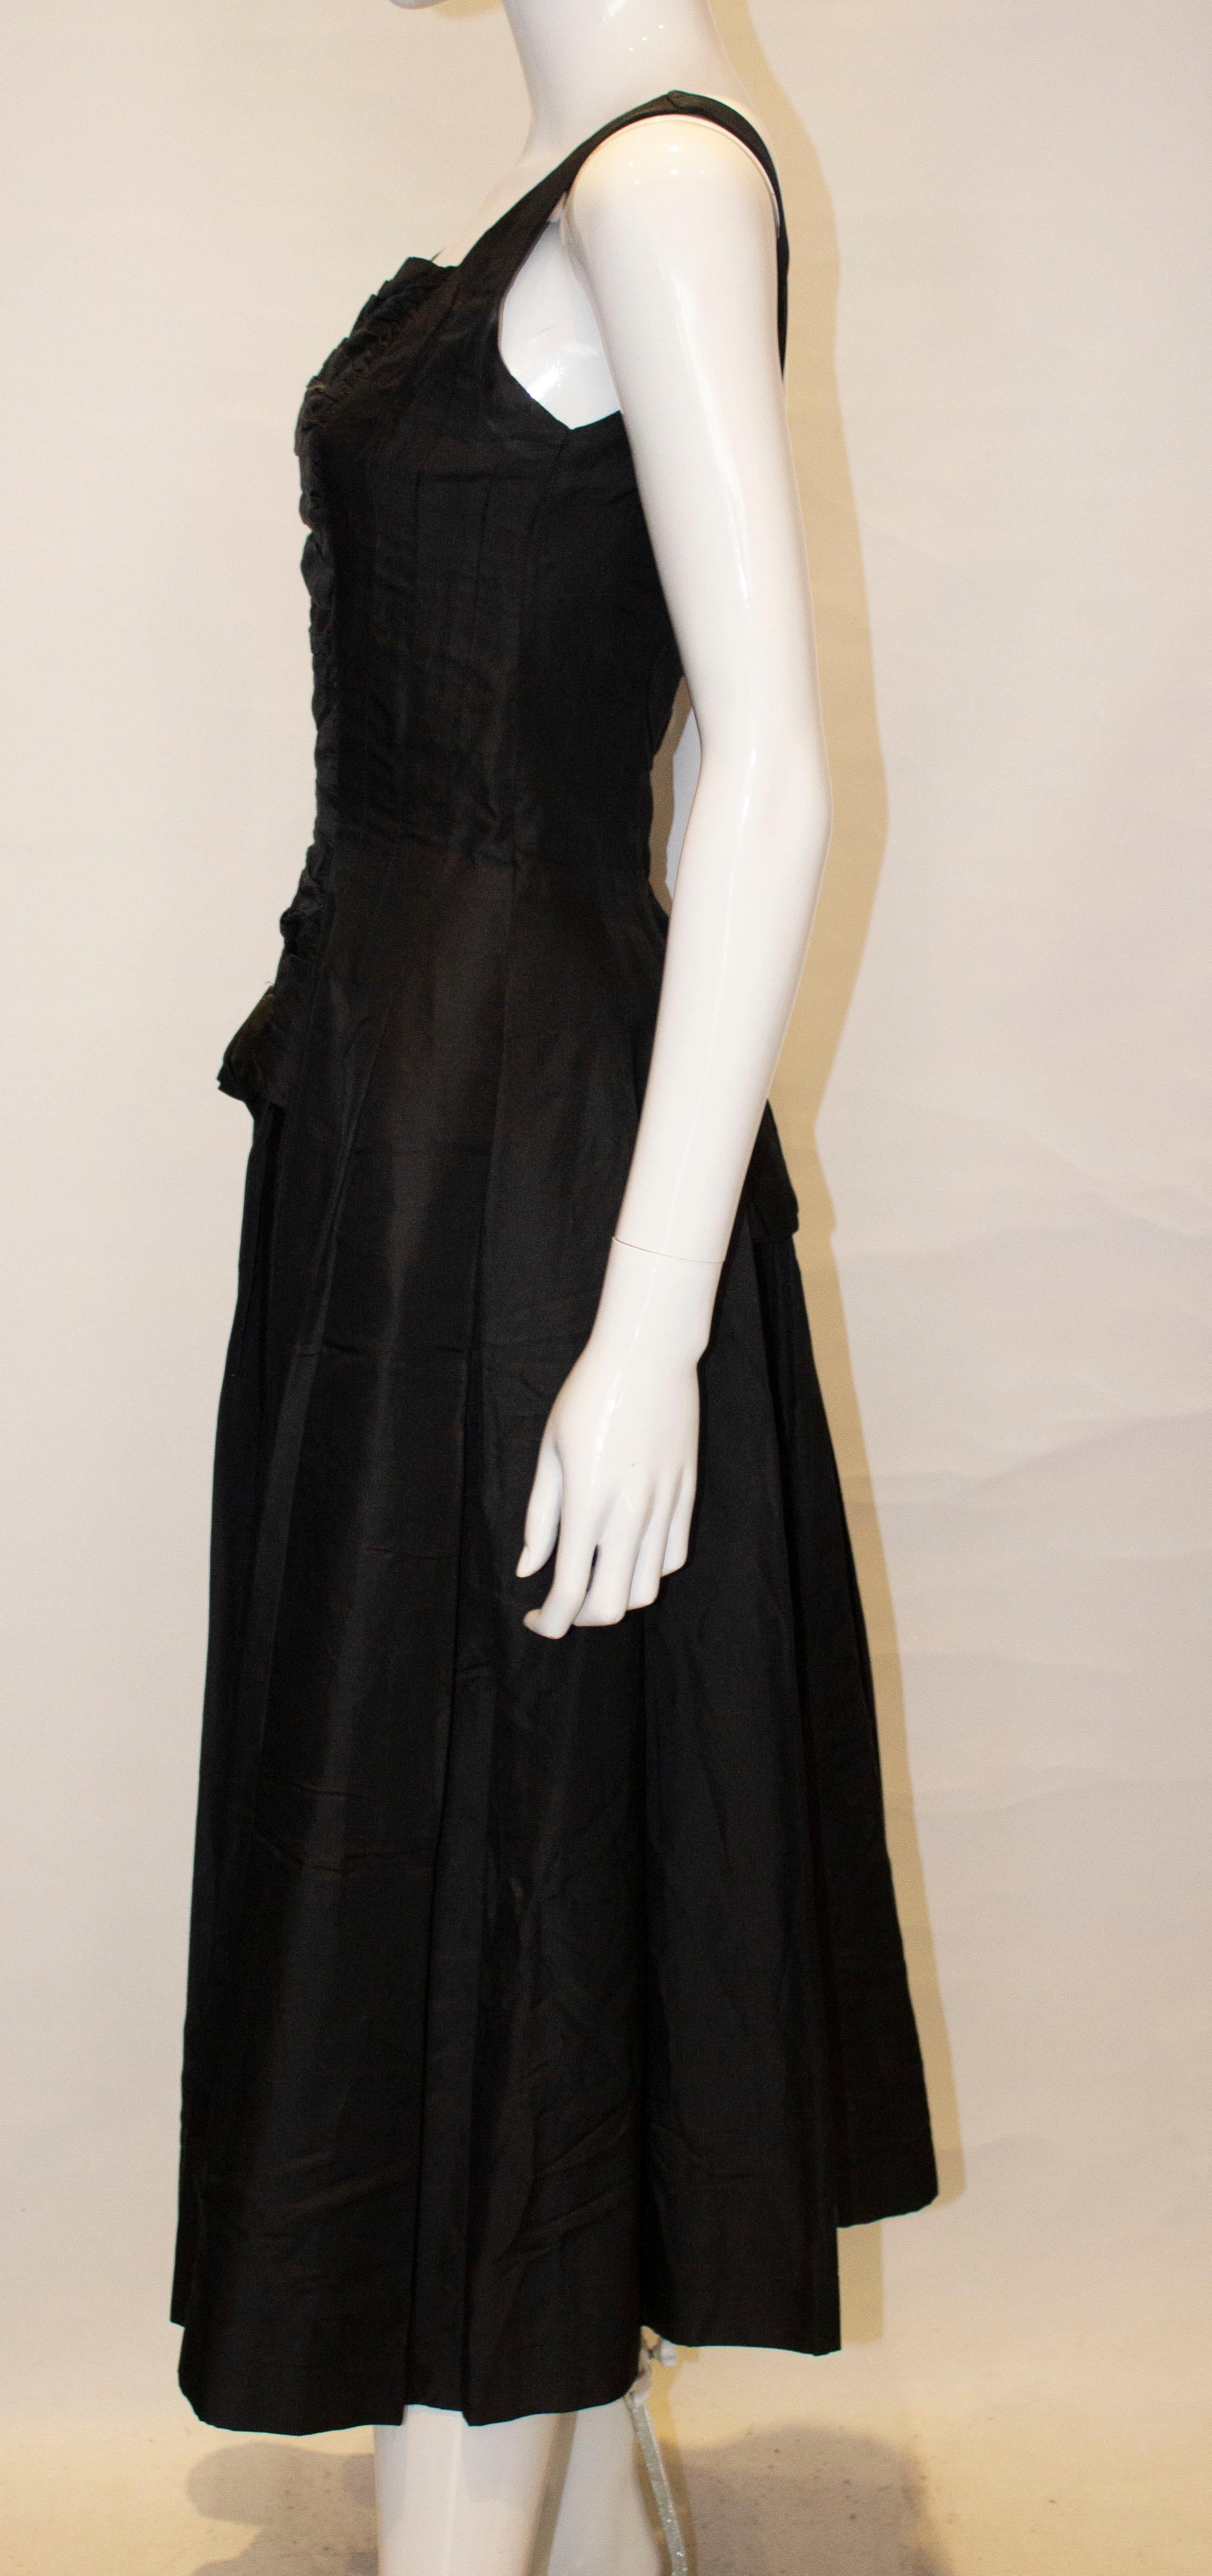 Vintage Suzy Perette Black Cocktail Dress 1